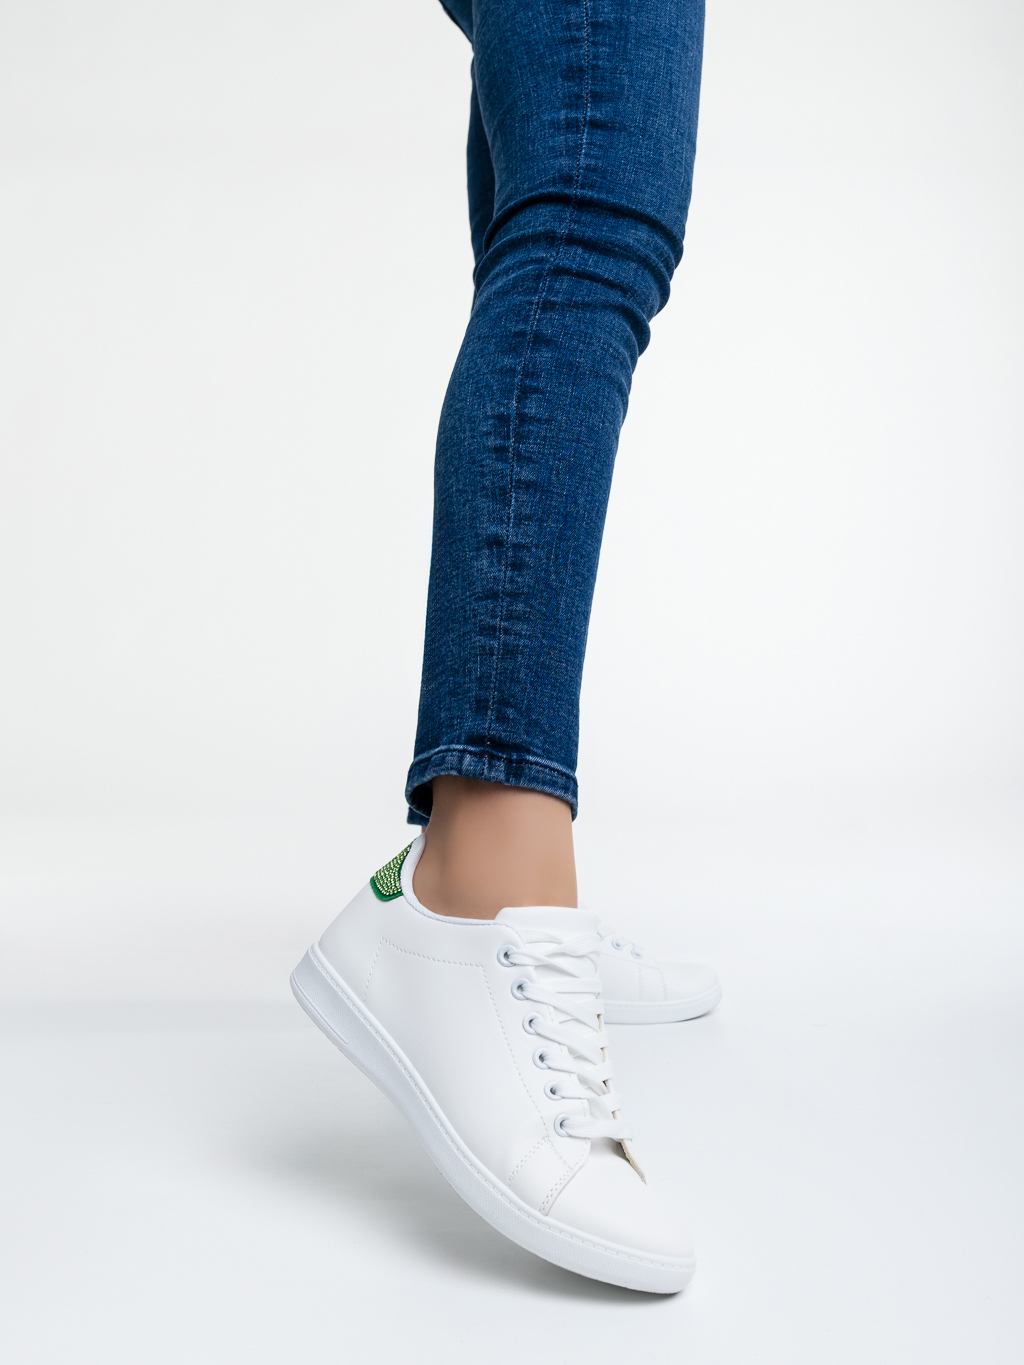 Дамски спортни обувки бели със зелено от еко кожа Liane, 2 - Kalapod.bg